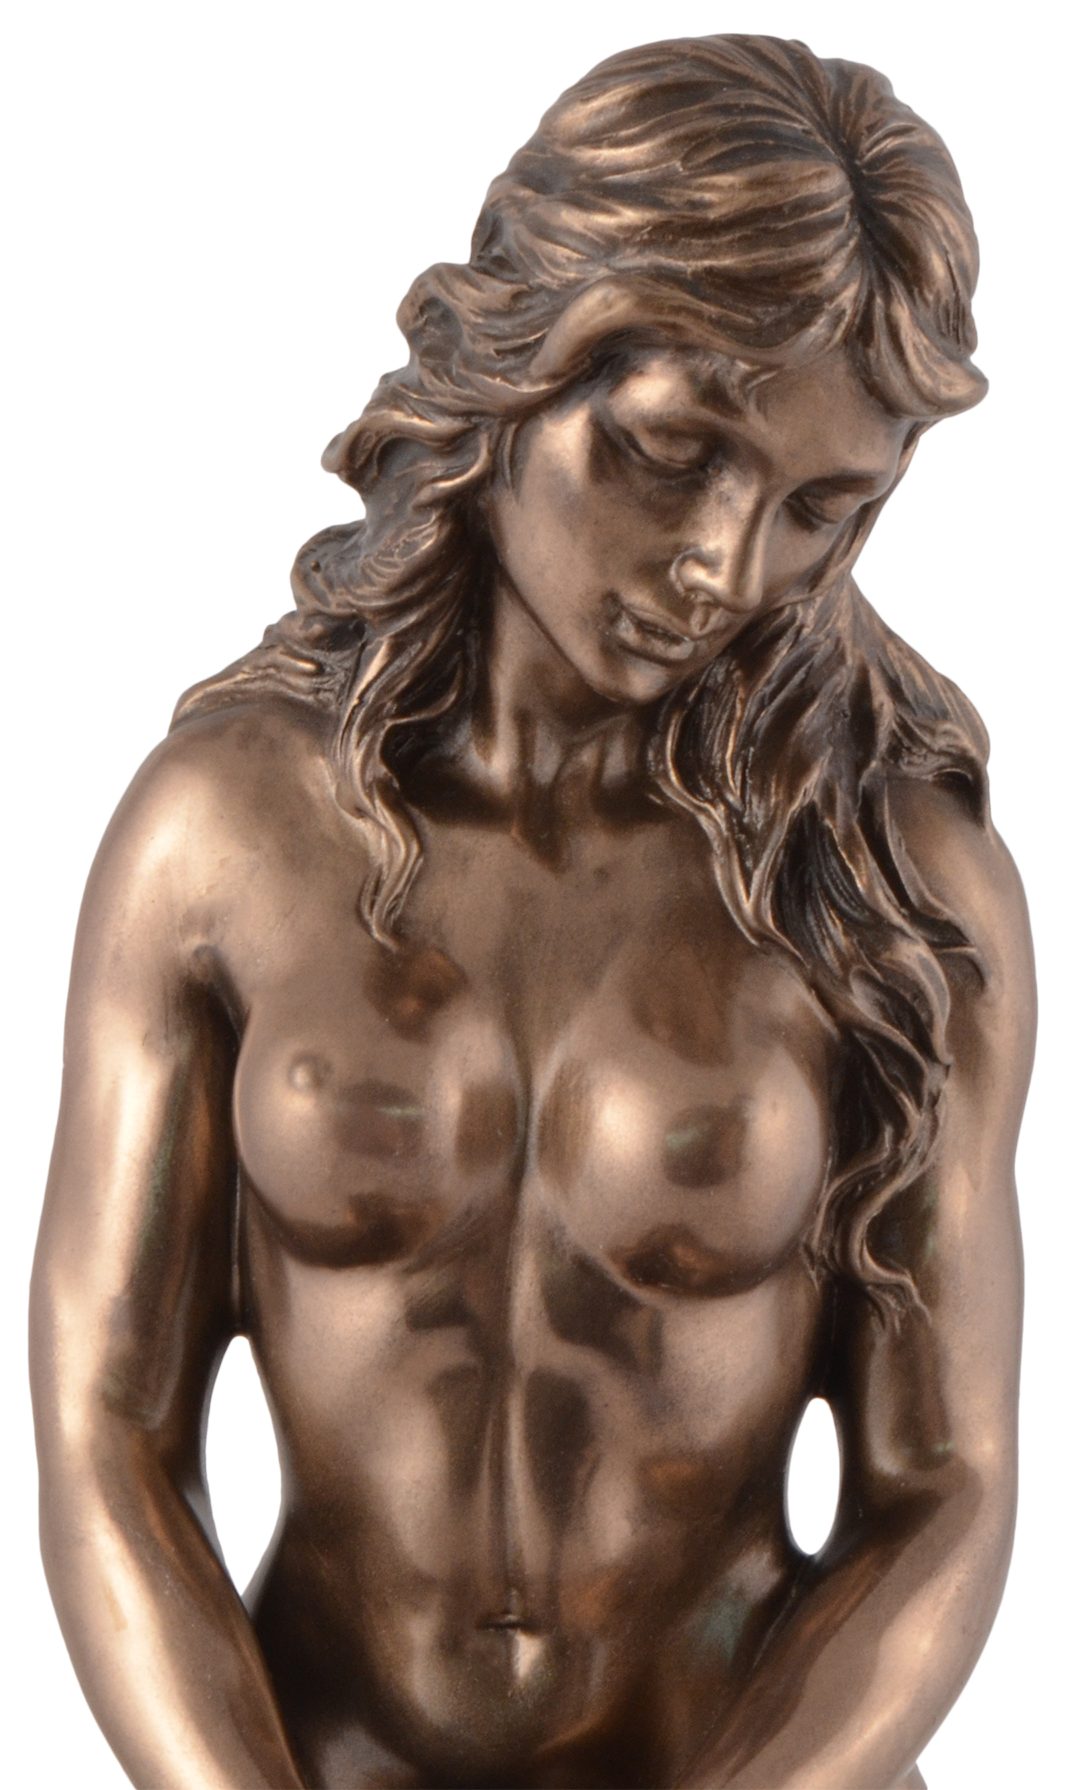 Dekofigur 10x6x15cm kniend direct ca. - Erwartung von bronziert, in Hand by LxBxH: Gmbh Nackte Frau Veronese, Vogler Akt Pose